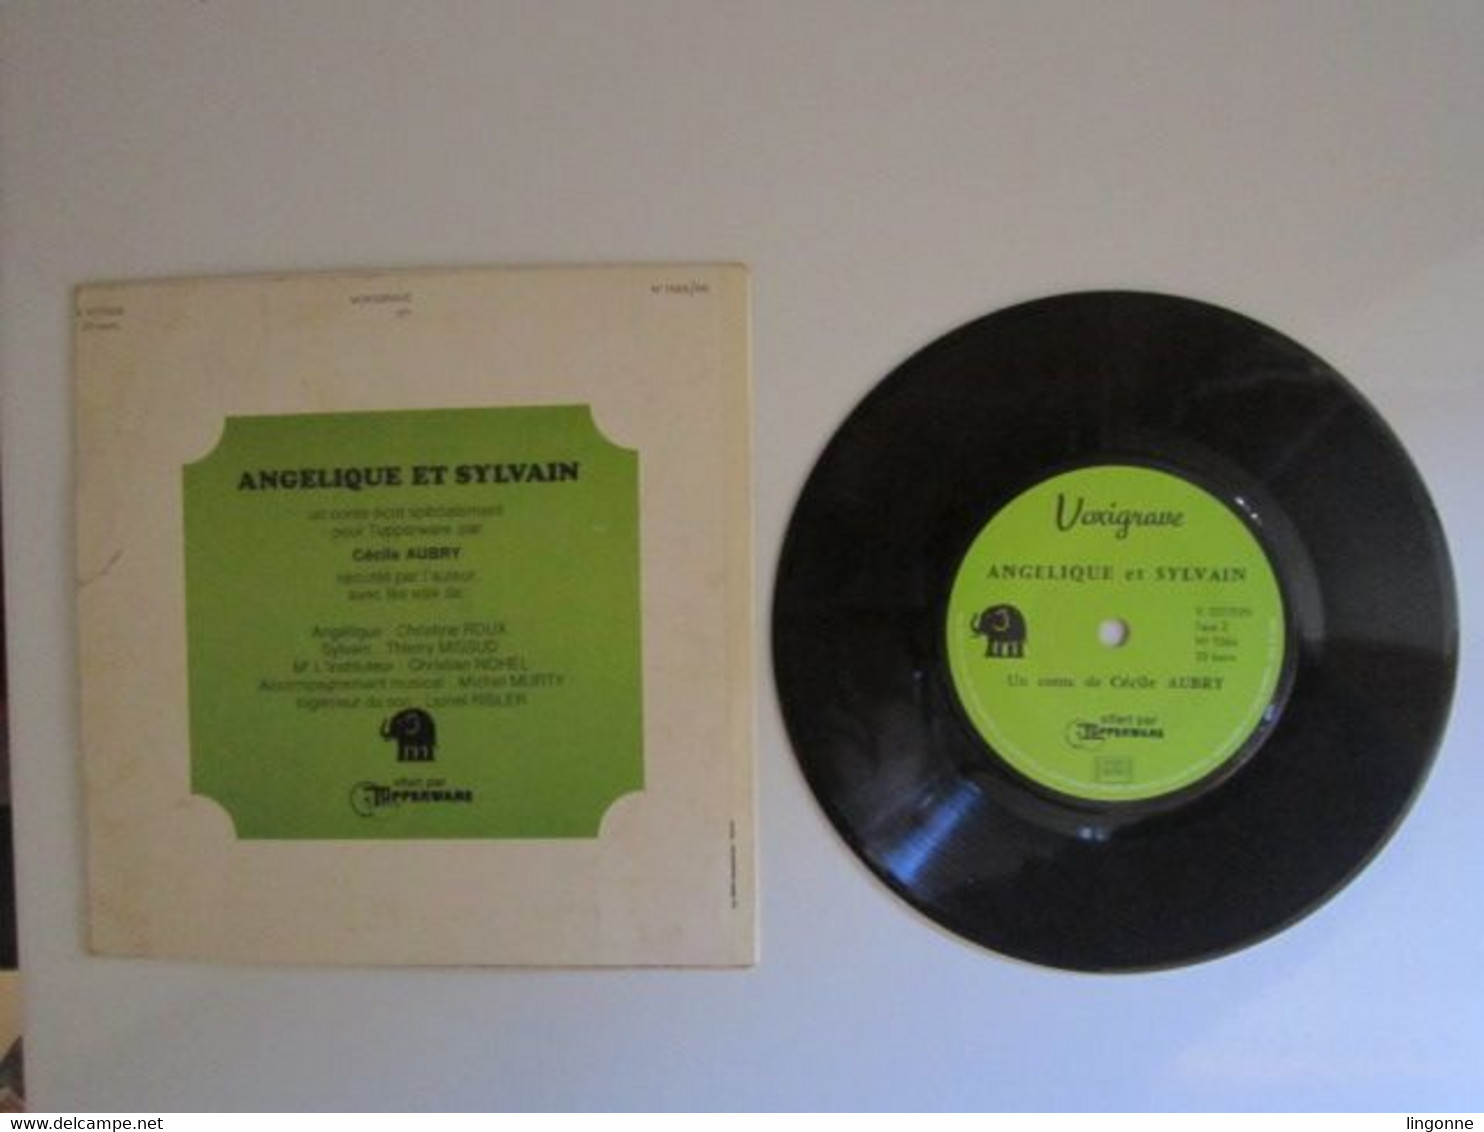 1971 Vinyle 45 Tours LIVRE DISQUE DE CECILE AUBRY " ANGELIQUE ET SYLVAIN " OFFERT PAR TUPPERWARE - Kinderen